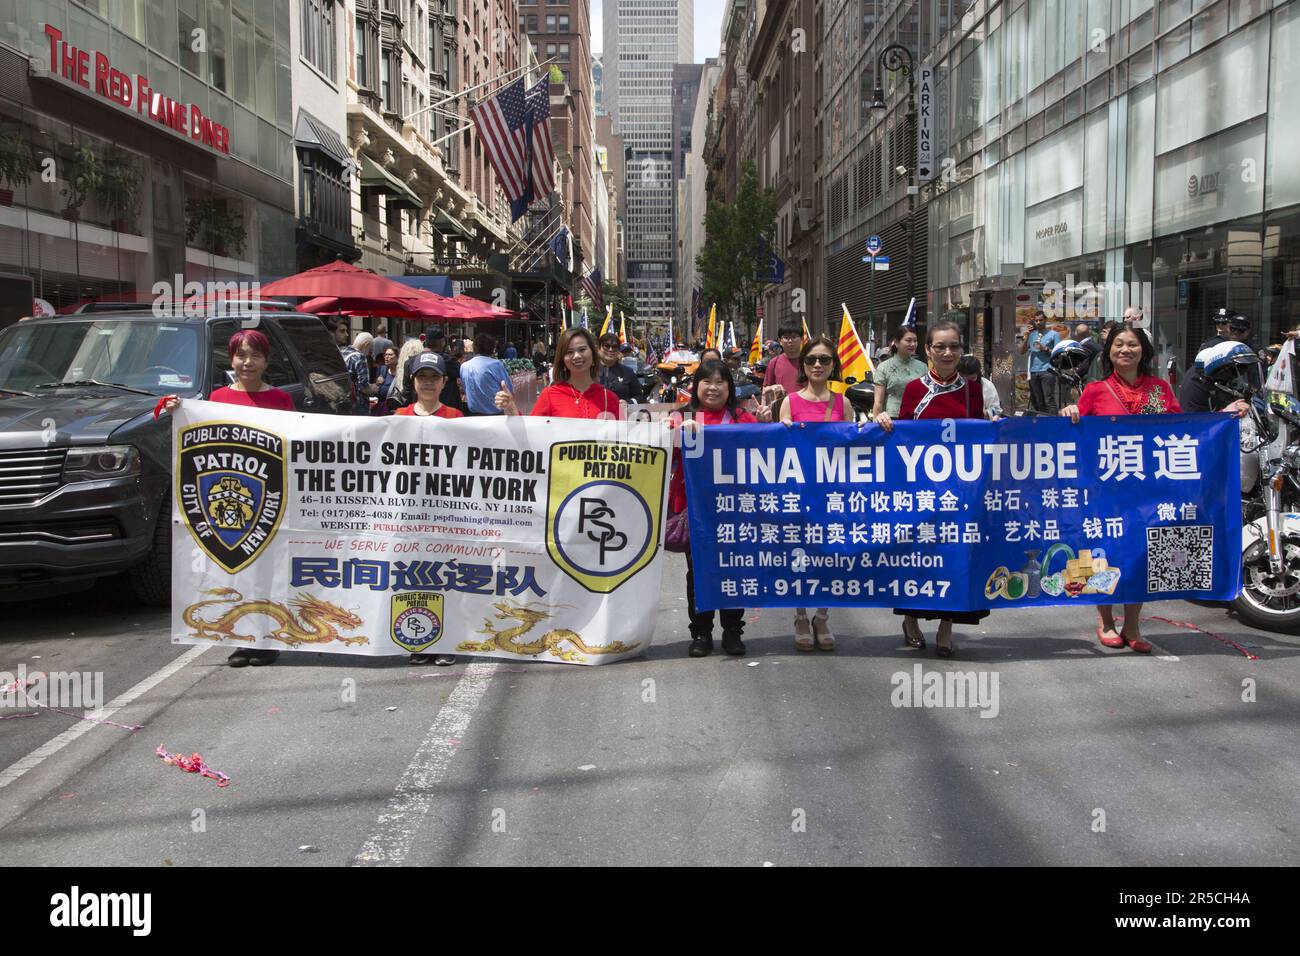 2023 Asian American Pacific Islander Heritage Parade a NYC marches up 6th Avenue nel centro di Manhattan, NYC. L'organizzazione asiatica di pattuglia per la pubblica sicurezza si è fatta maree nella parata. Foto Stock